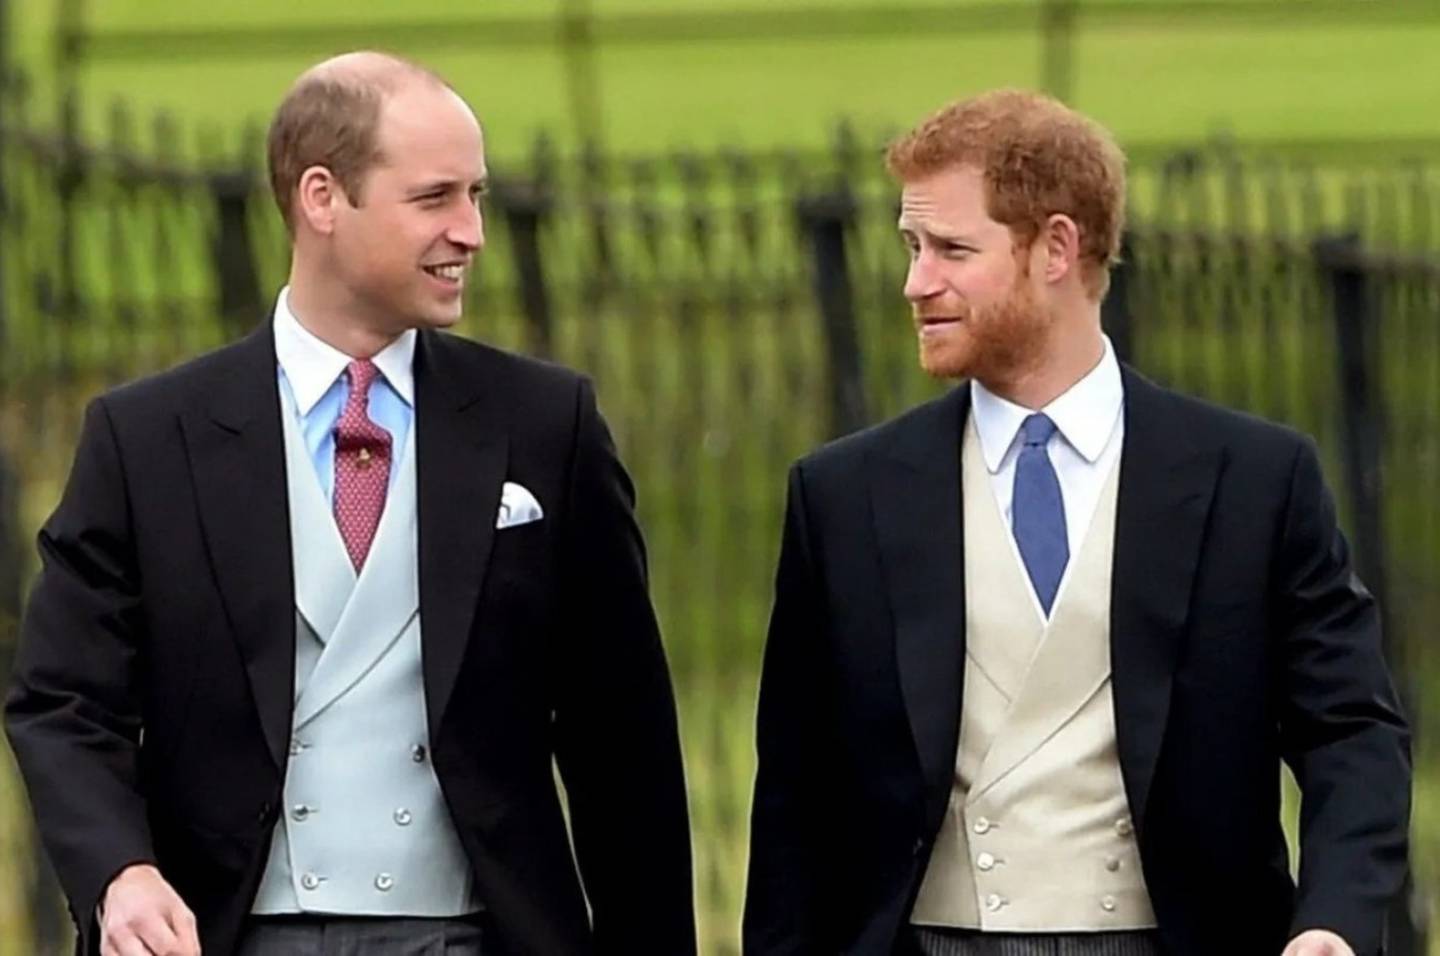 Príncipes William y Harry de la monarquía británica se miran a la cara con expresión sonriente.